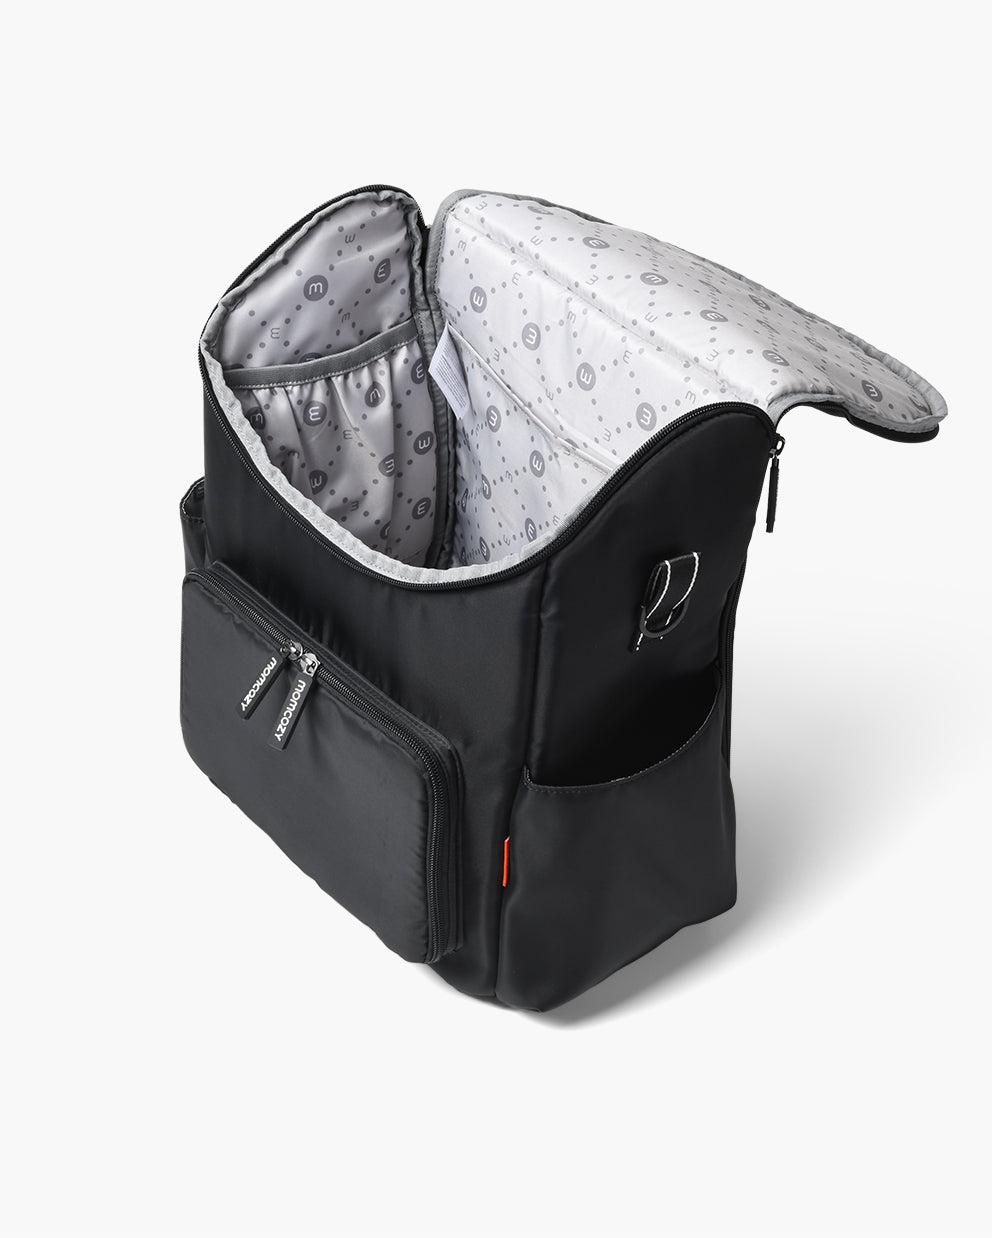 Momcozy Baby Diaper Travel Bag, Black